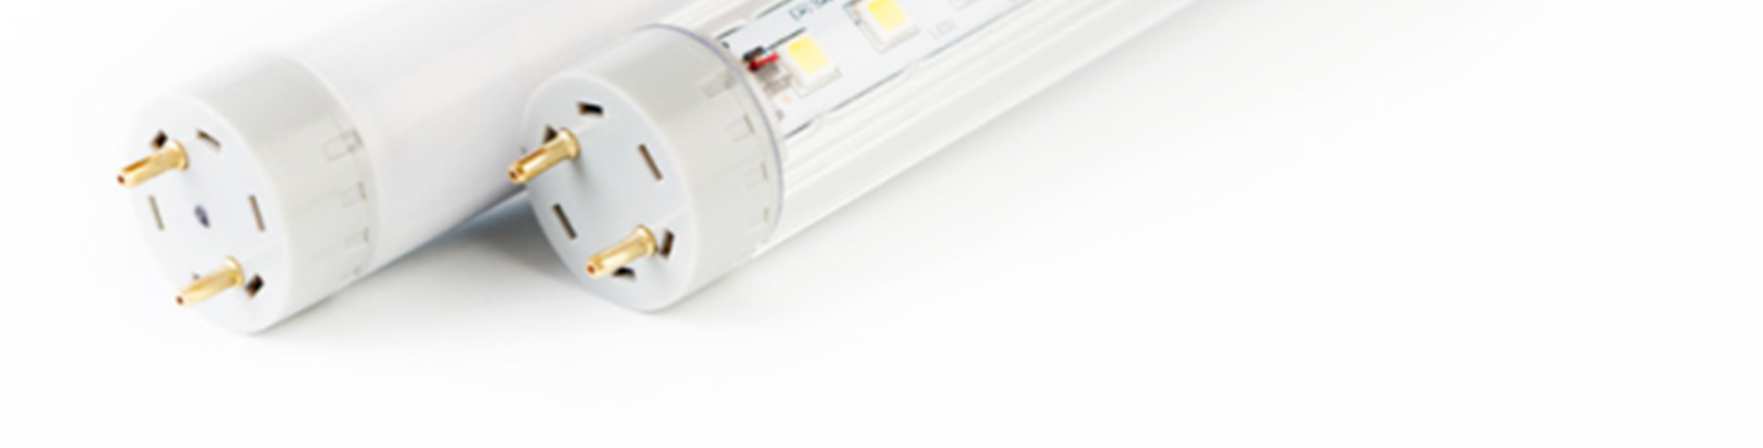 Bild 15. LED-lampor finns i många utföranden. Själva lysdioden ser ofta ut som bilden längst till höger. Dessa kan placeras en och en eller tillsammans. Underst visas exempel på LED-lysrör.